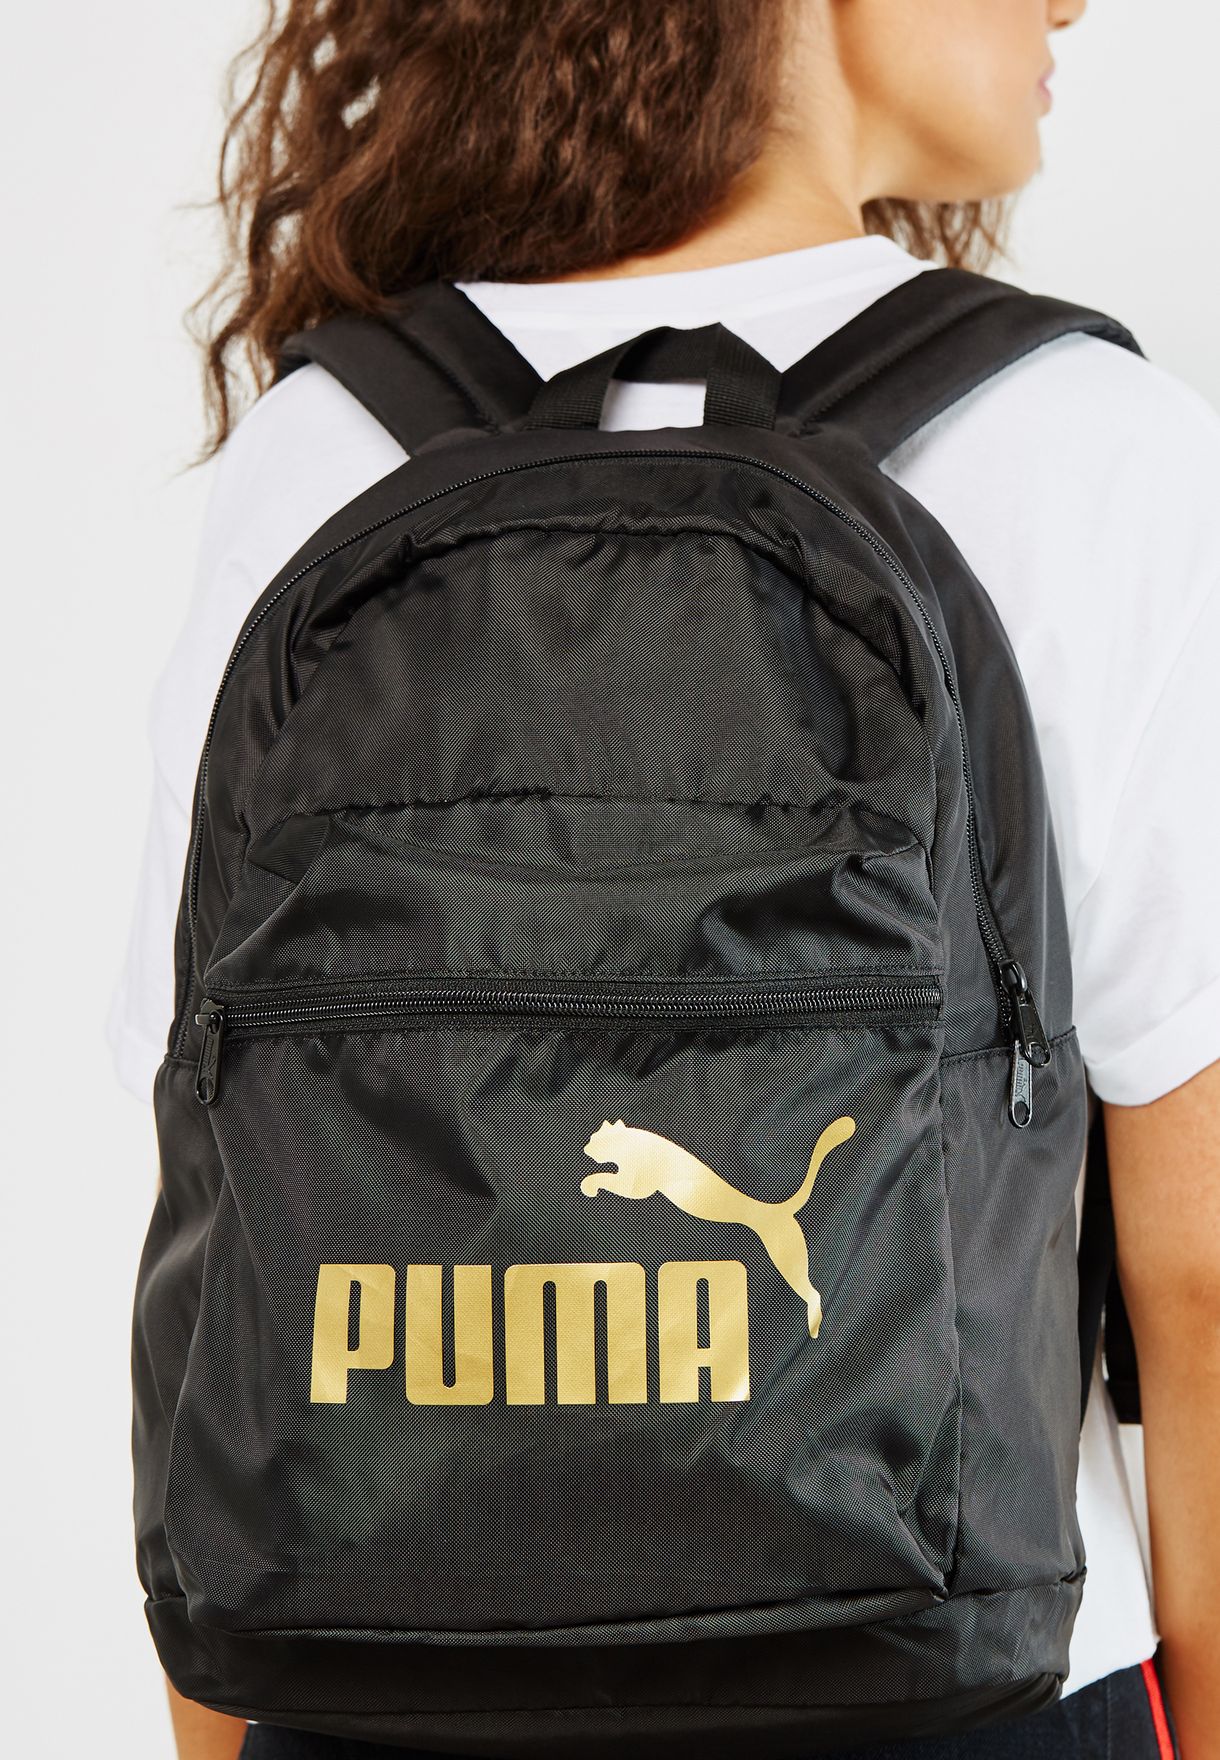 puma classic backpack